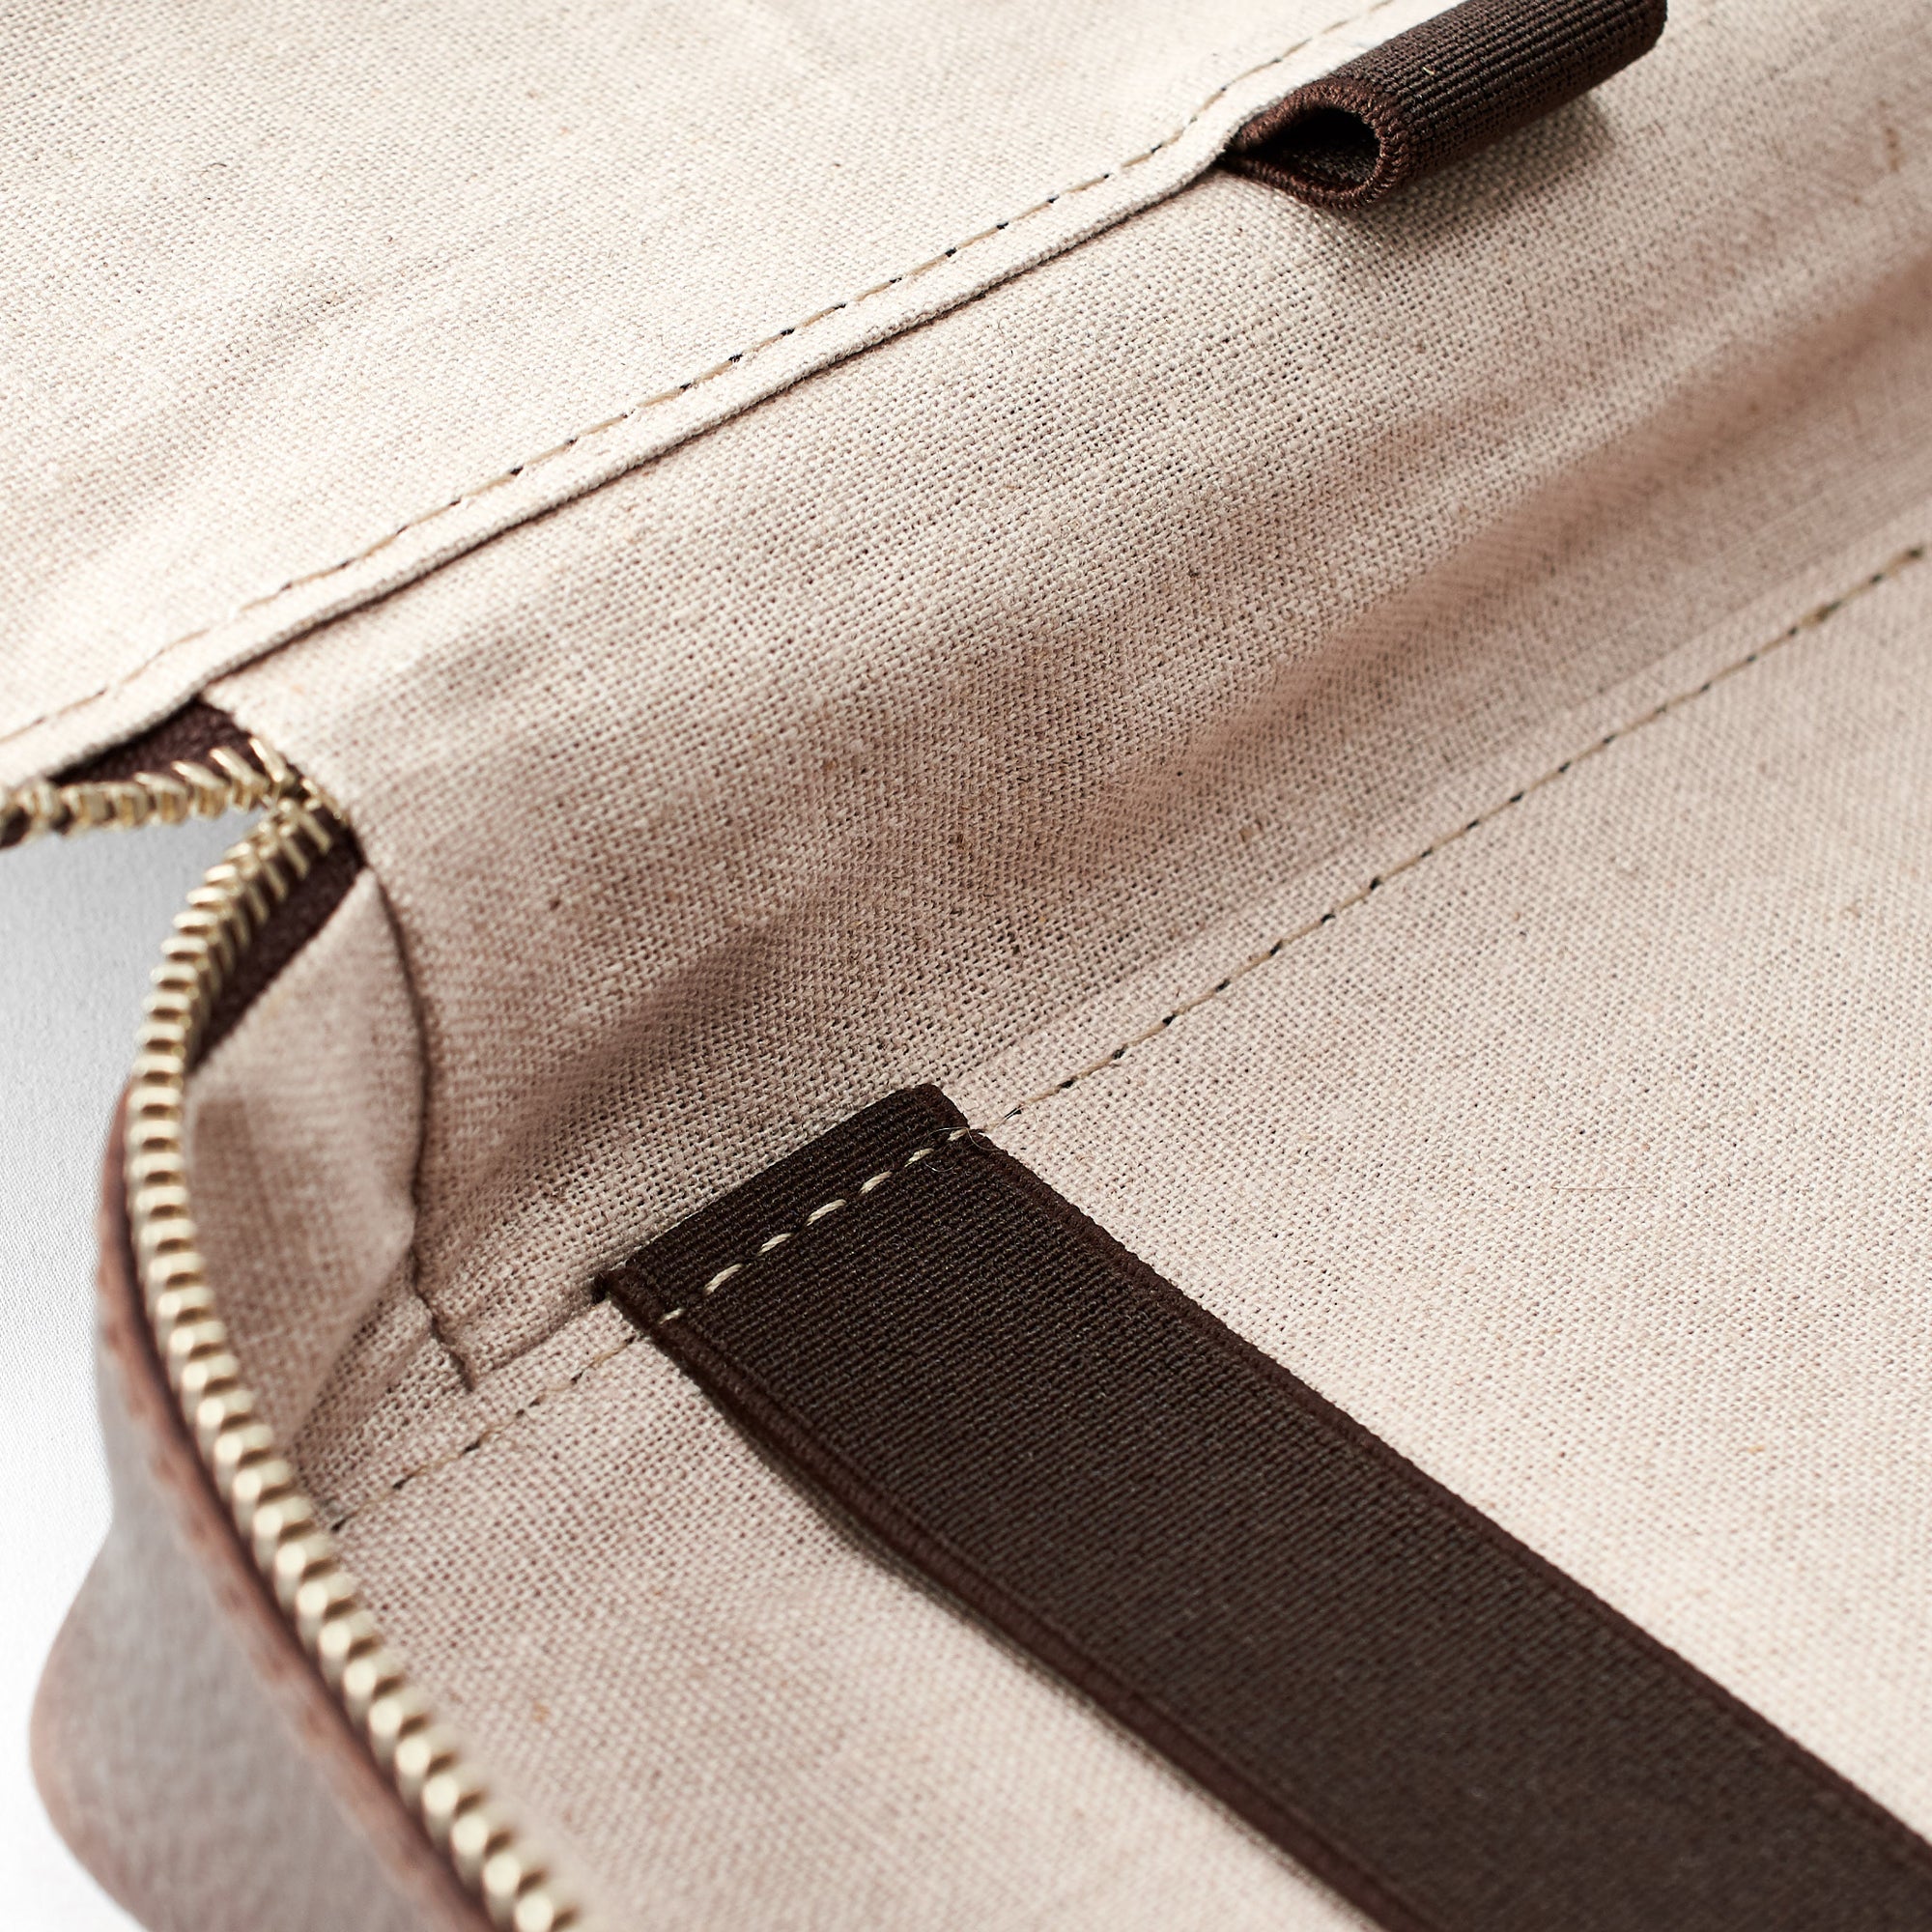 Linen soft texture. Best travel "tech organizer" dark brown by Capra Leather